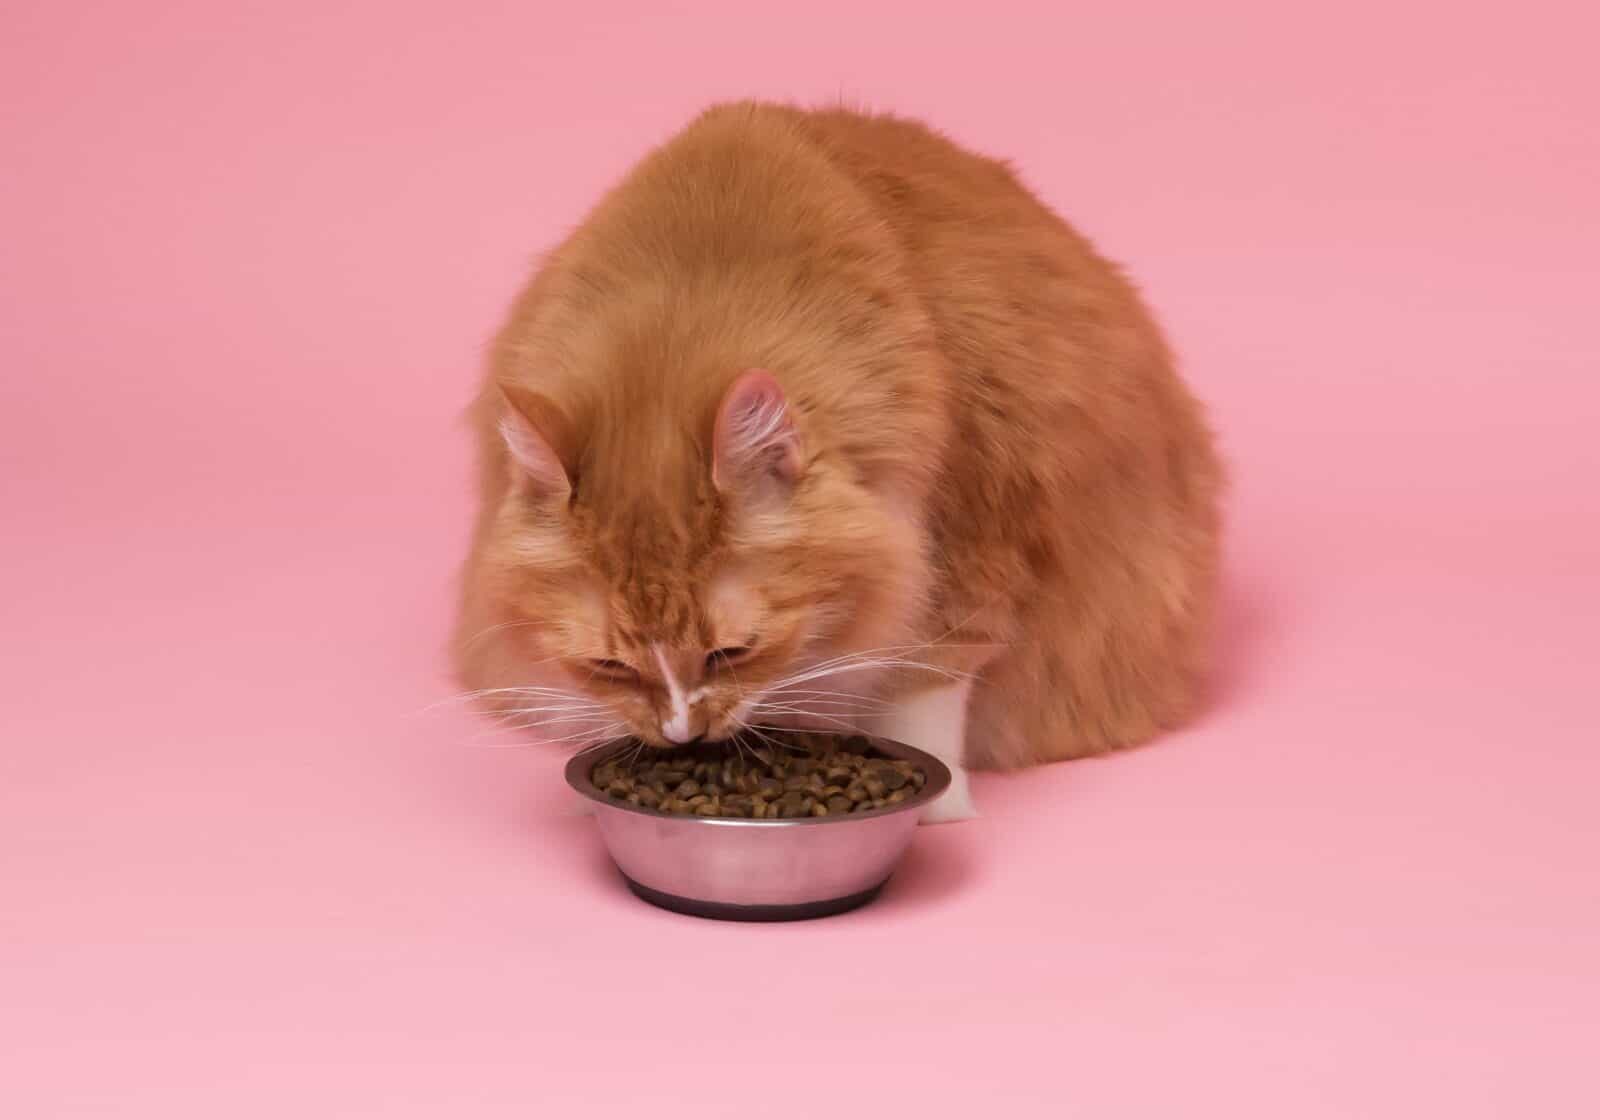 Orange cat eating against pink backdrop.